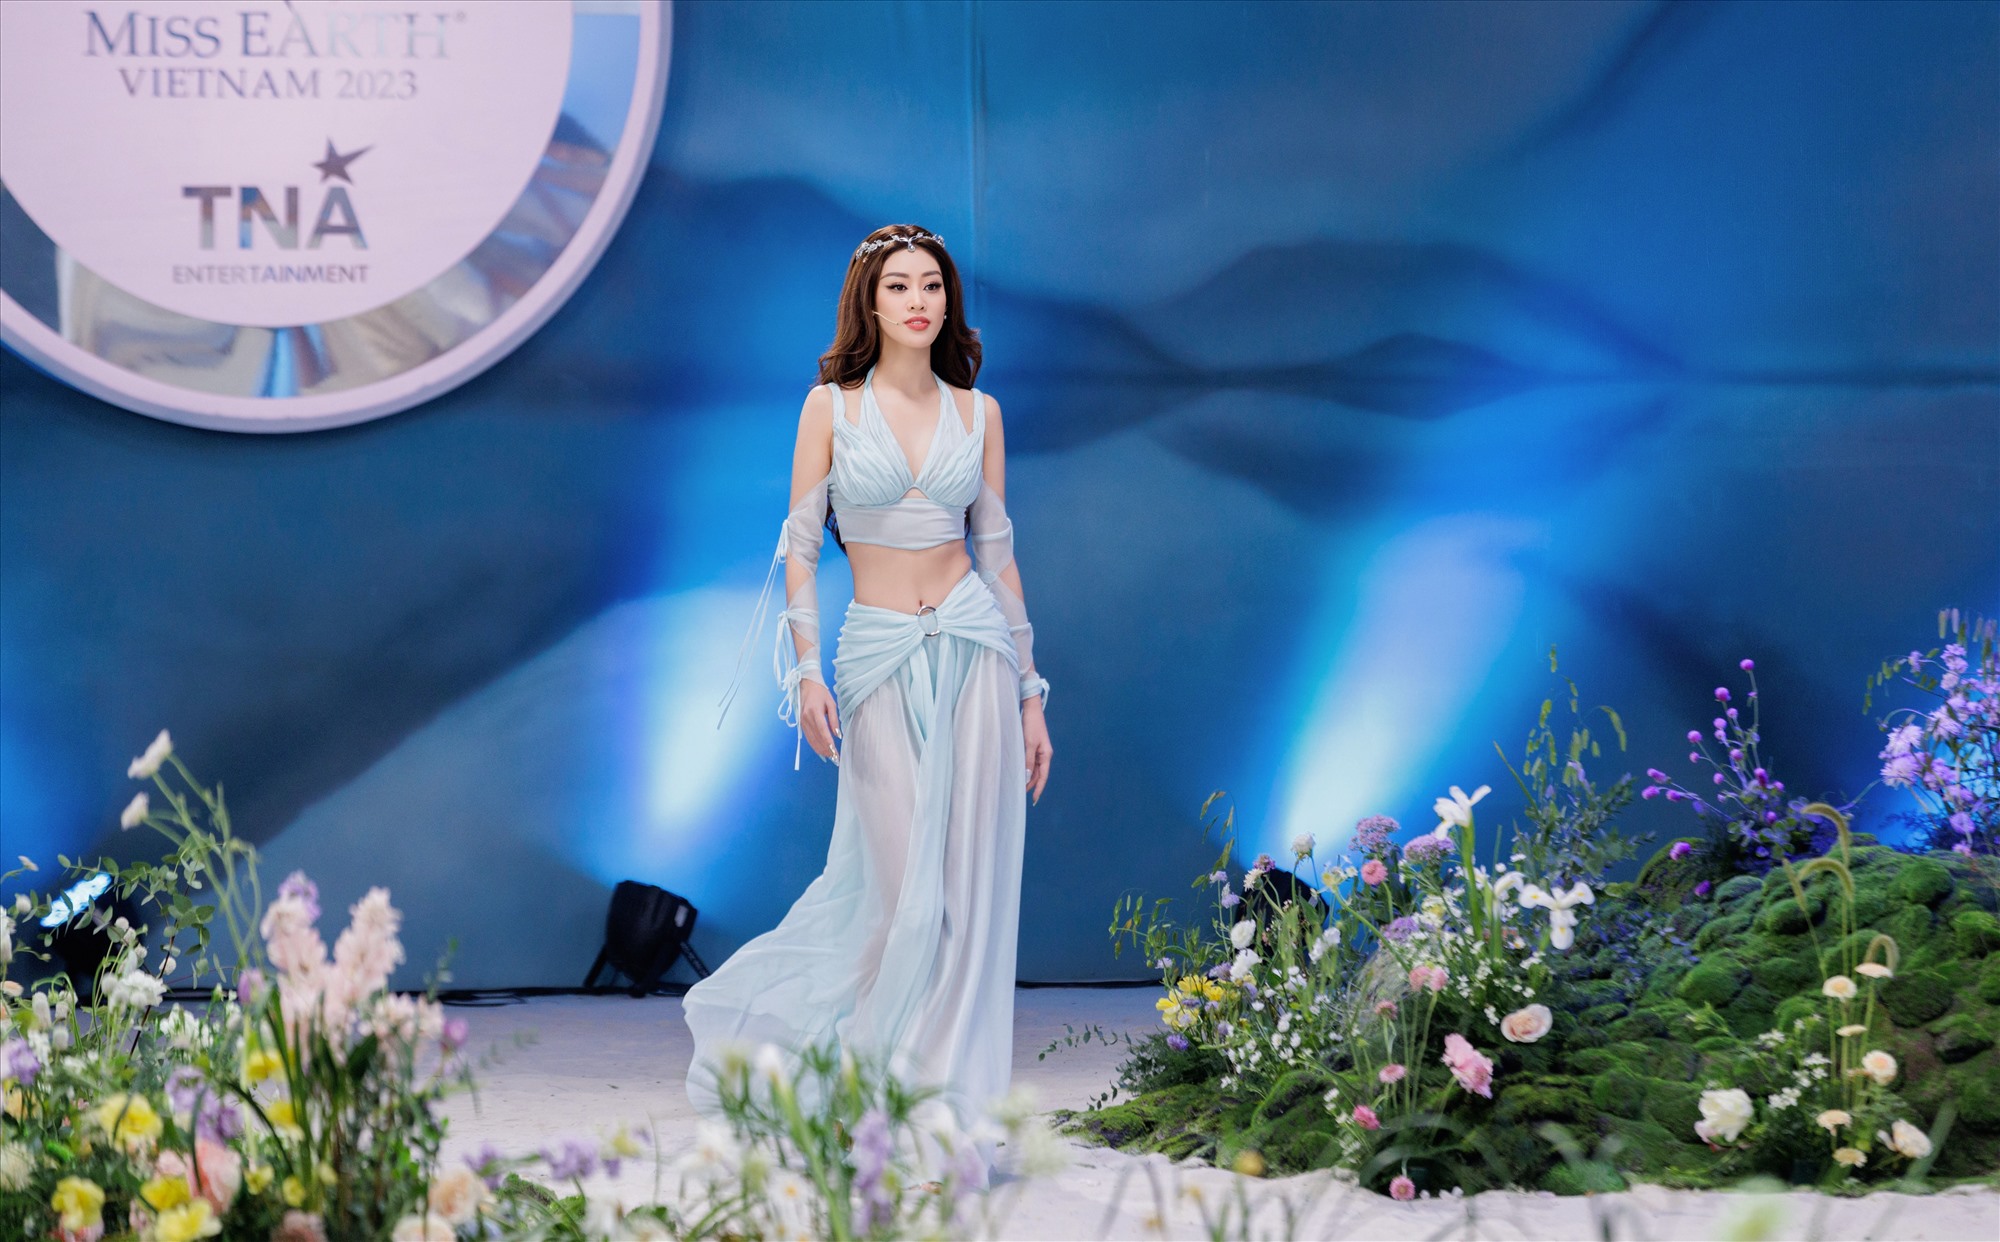 Hoa hậu Khánh Vân góp mặt trong dàn giám khảo cuộc thi năm nay